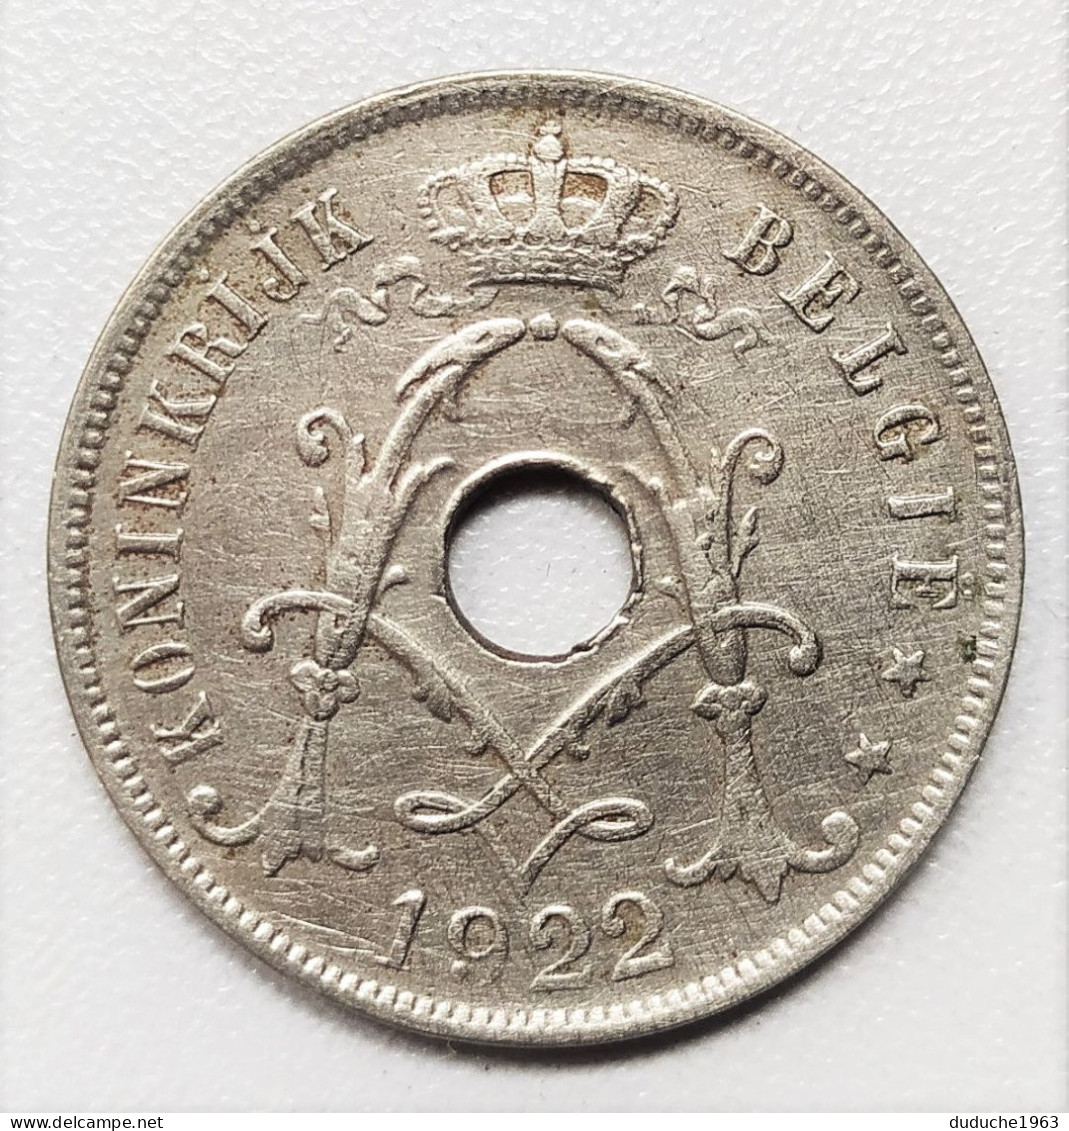 Belgique - 25 Centimes 1922 - 25 Centimes